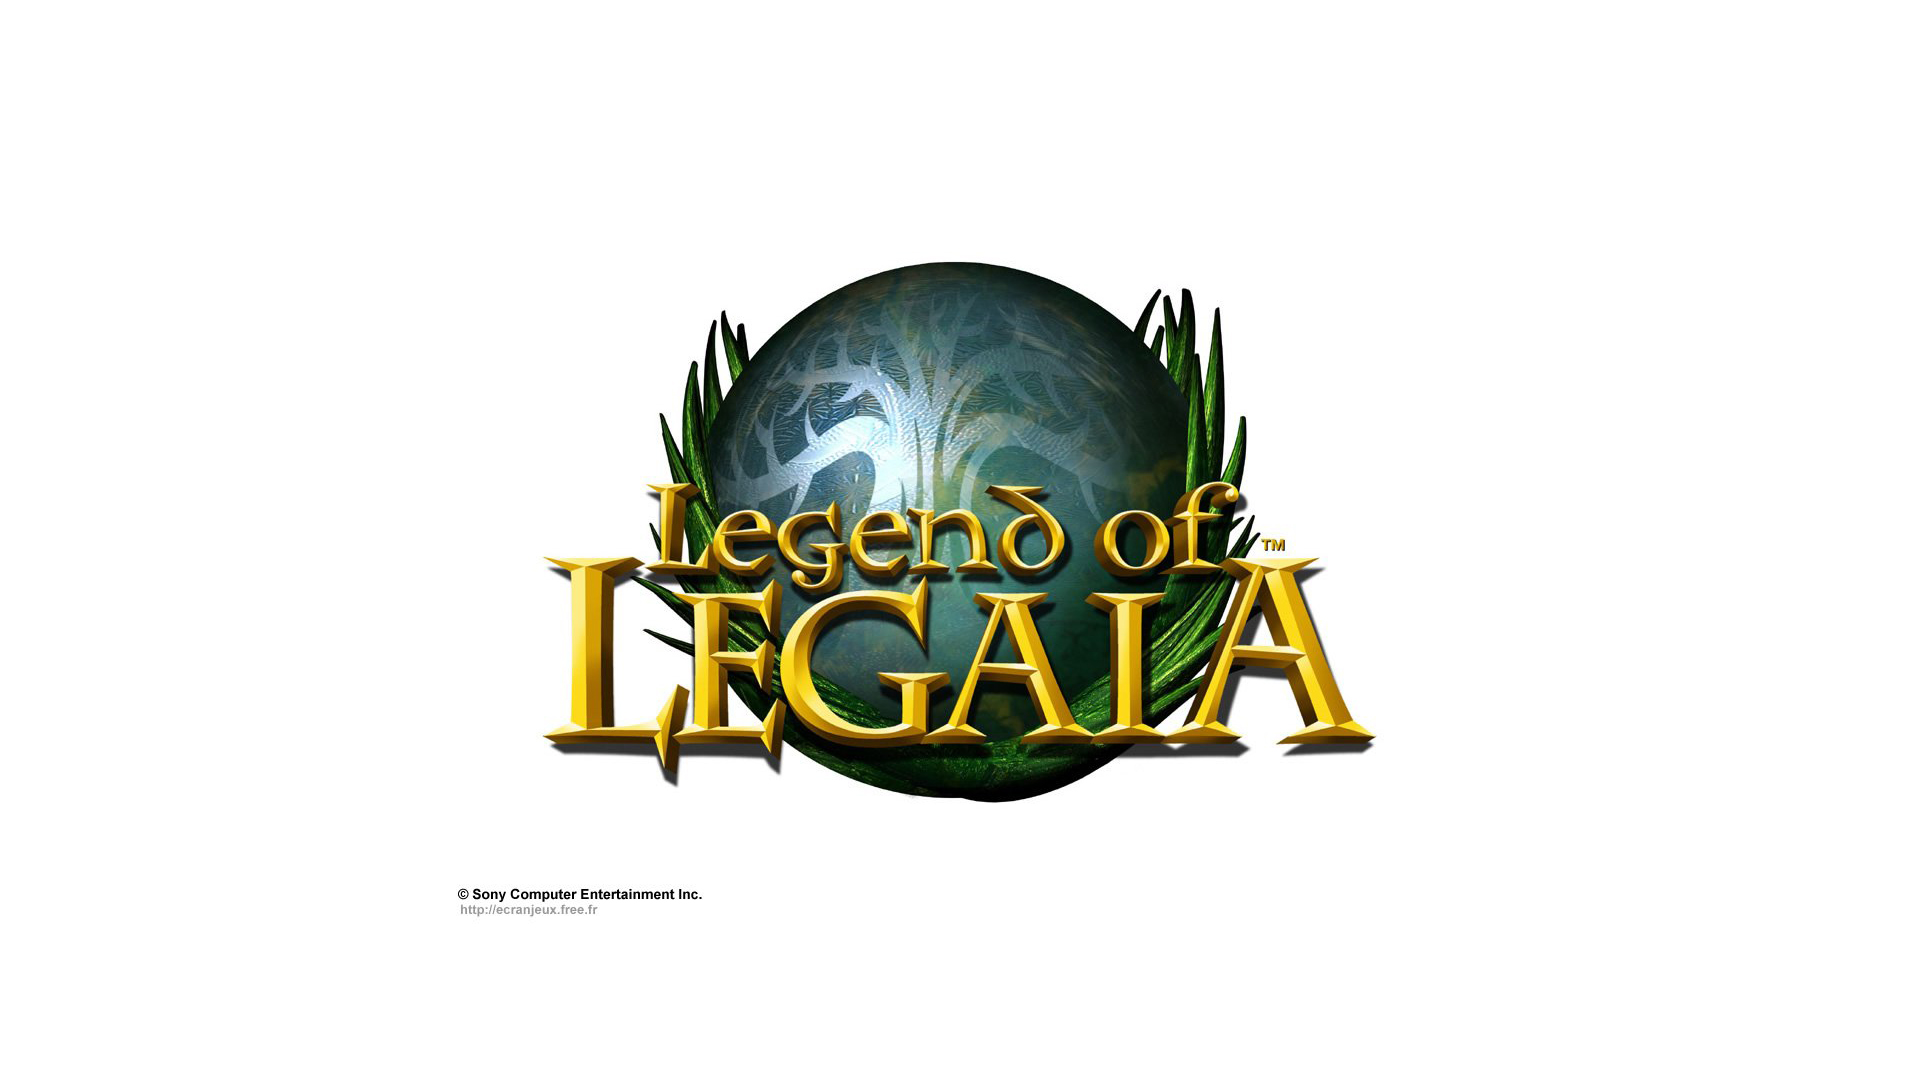 legend of legaia 3 release date